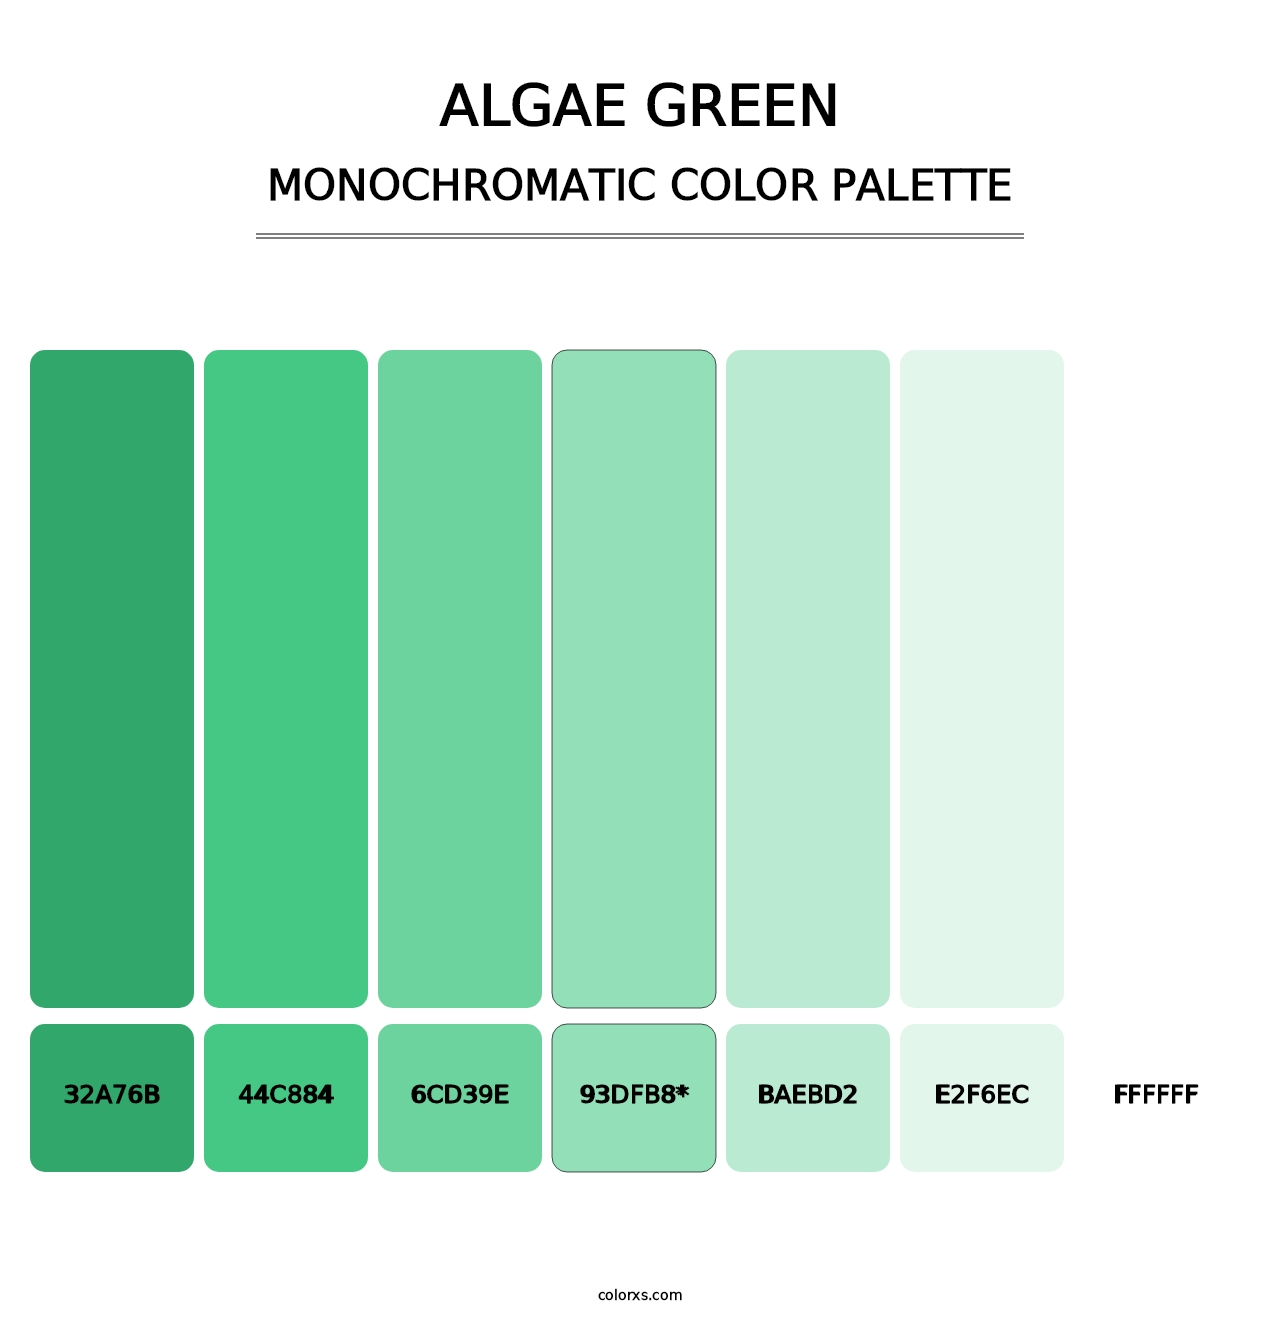 Algae Green - Monochromatic Color Palette